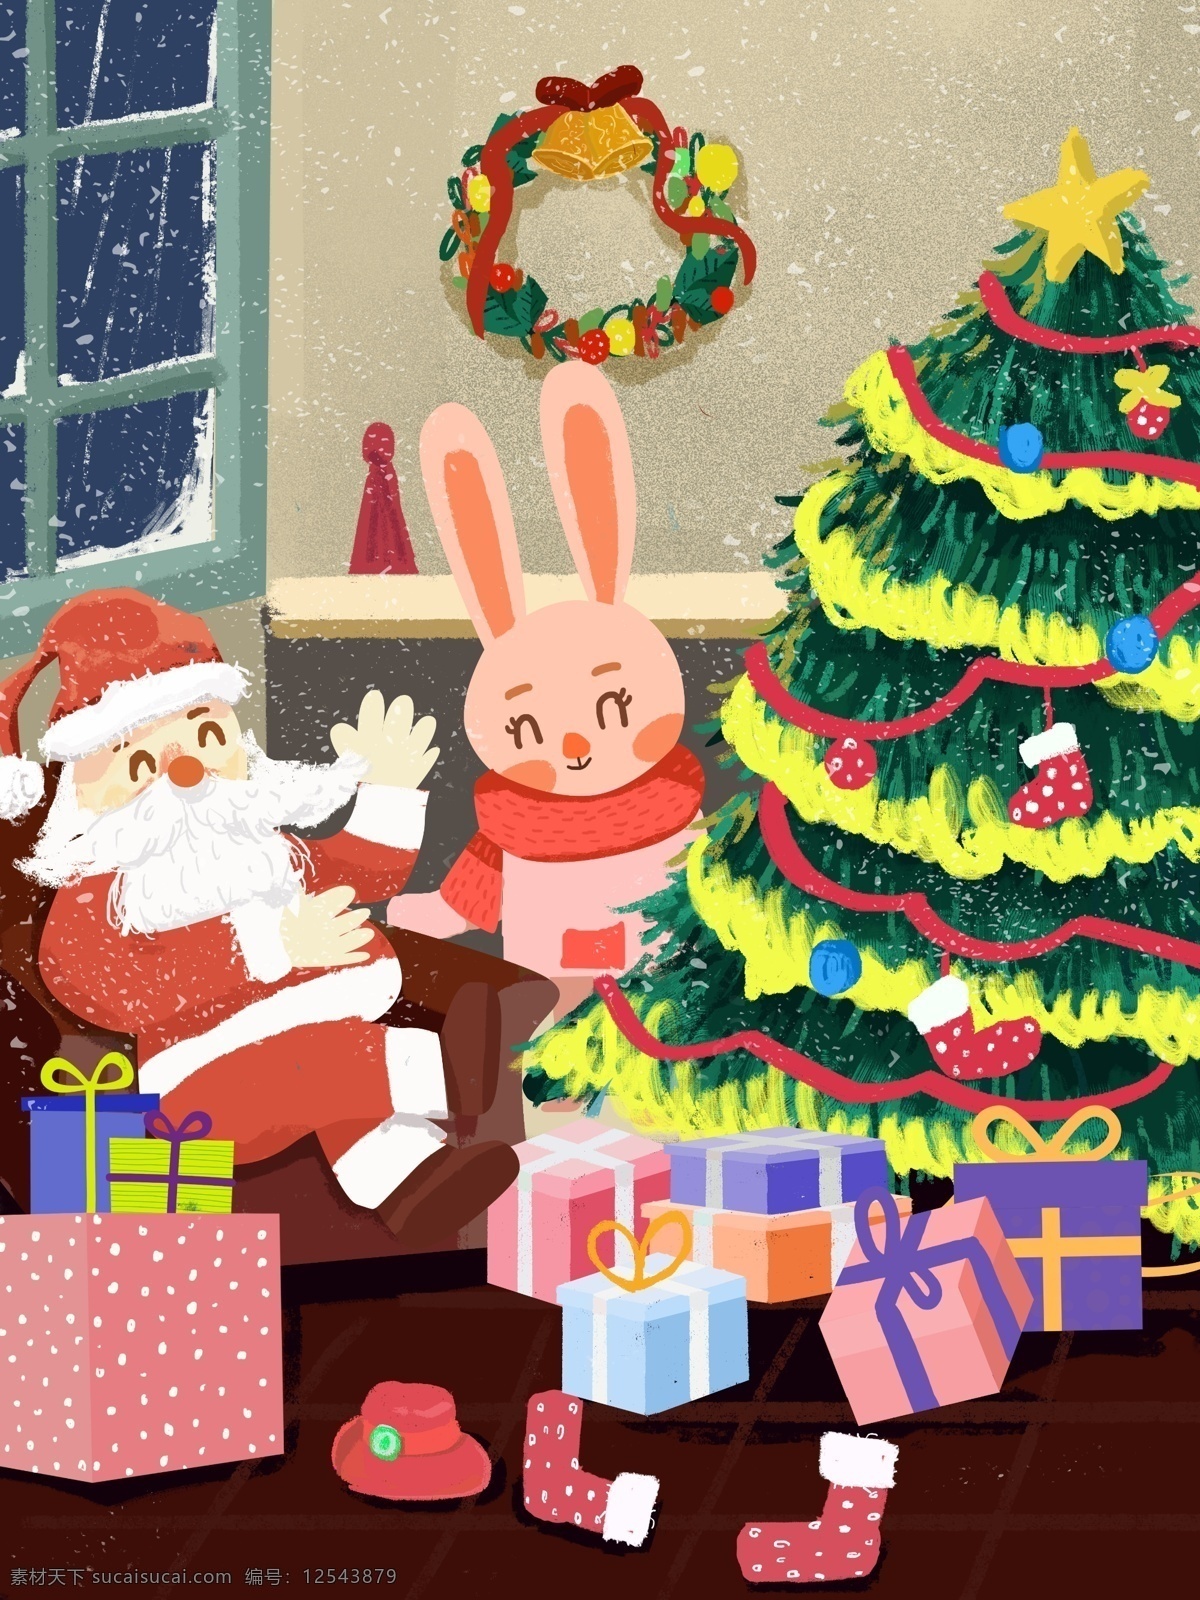 圣诞节 圣诞老人 圣诞 礼物 插画 圣诞树 节日 兔子 圣诞礼物 圣诞花环 袜子 铃铛 圣诞活动 配图 手机媒介配图